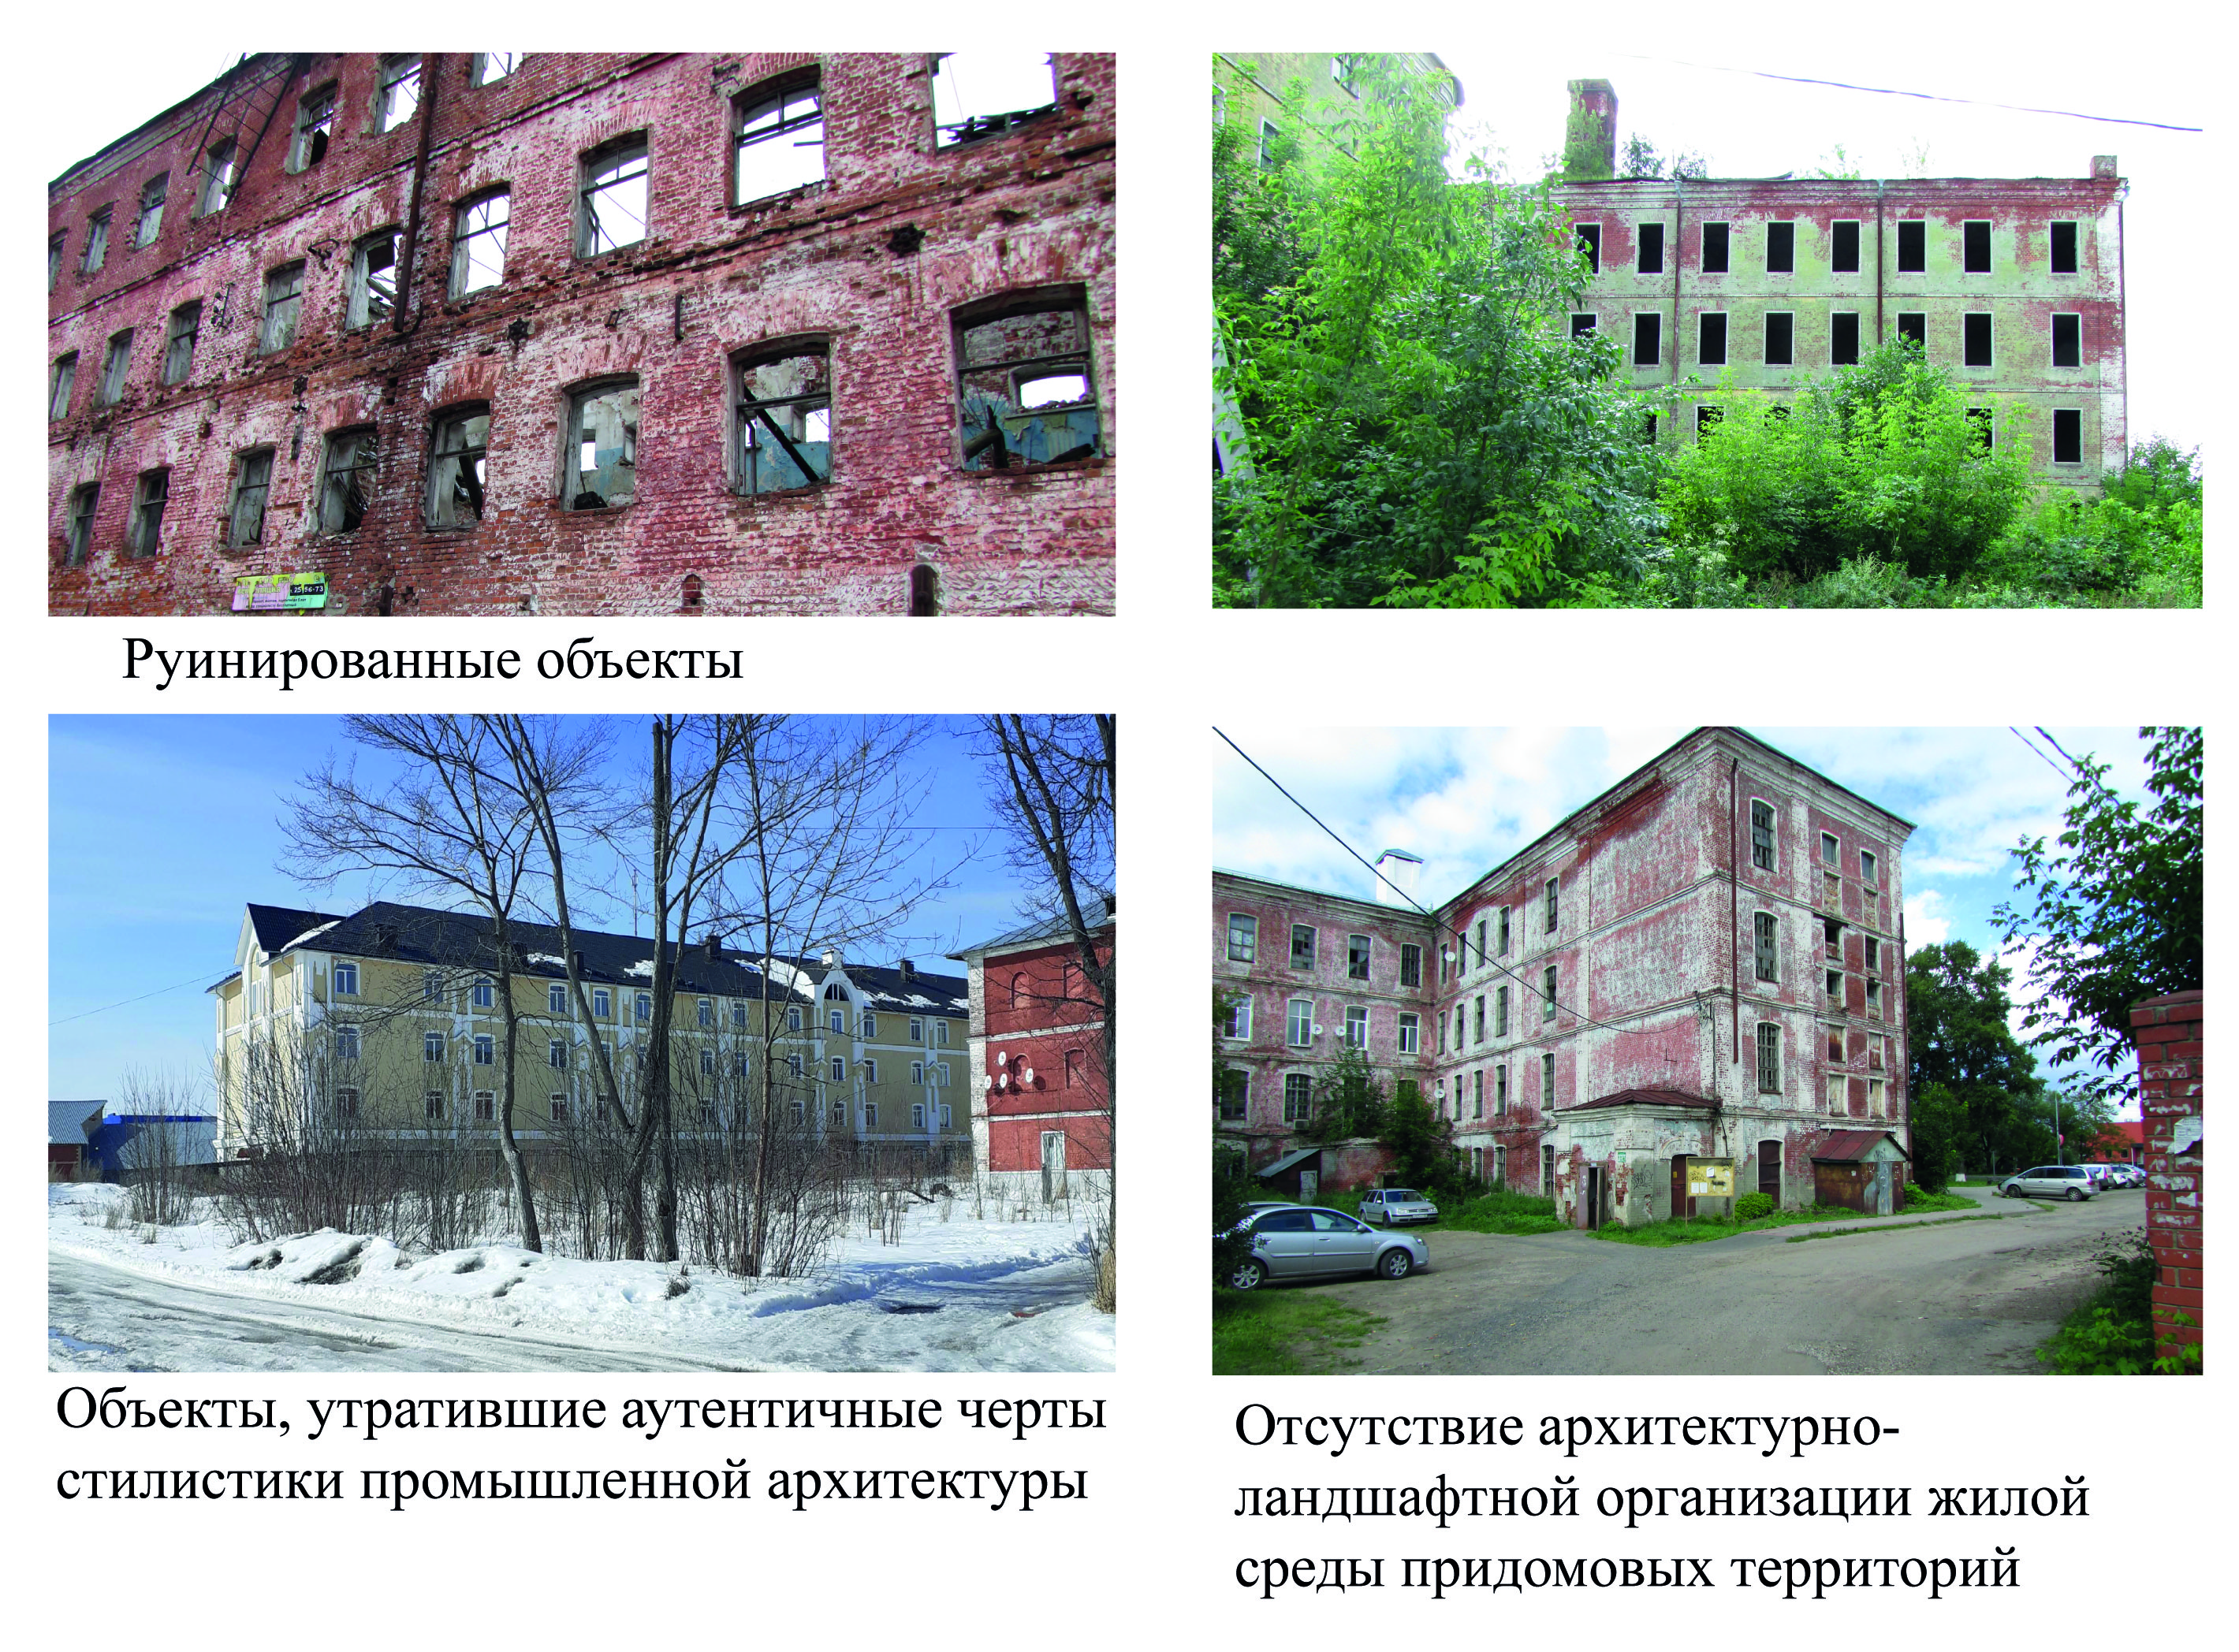 Руинированные здания рабочих казарм и объекты, утратившие аутентичные черты промышленной архитектуры